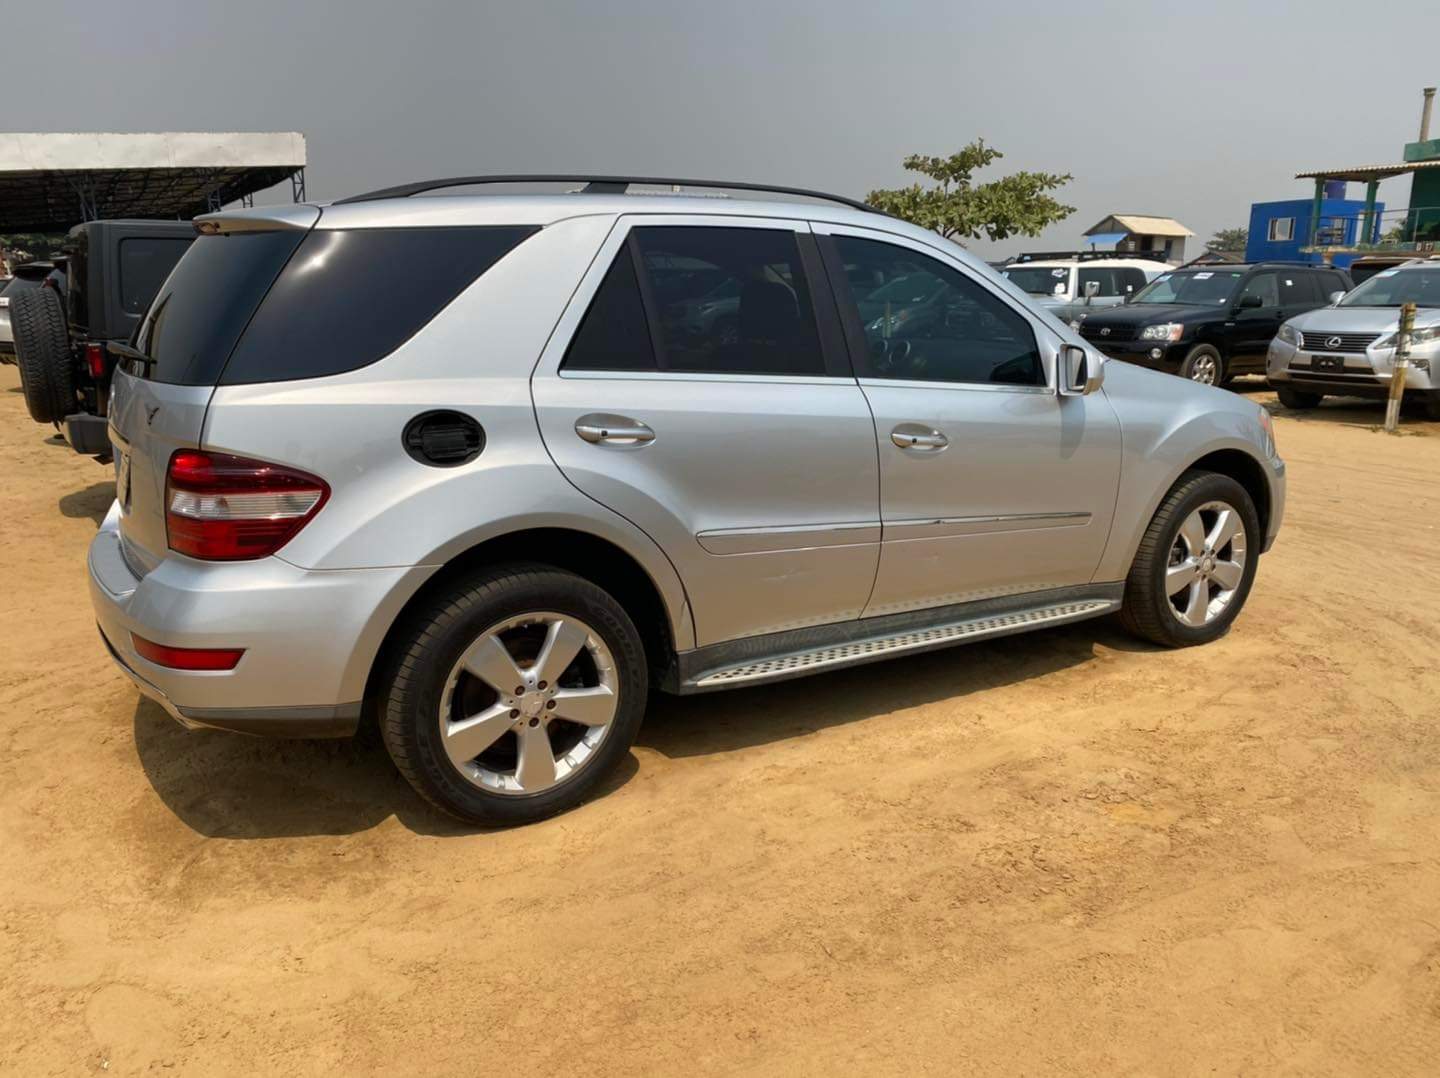 Lire la suite à propos de l’article Price of Mercedes Benz ML350 in Nigeria, Lagos by cotonou